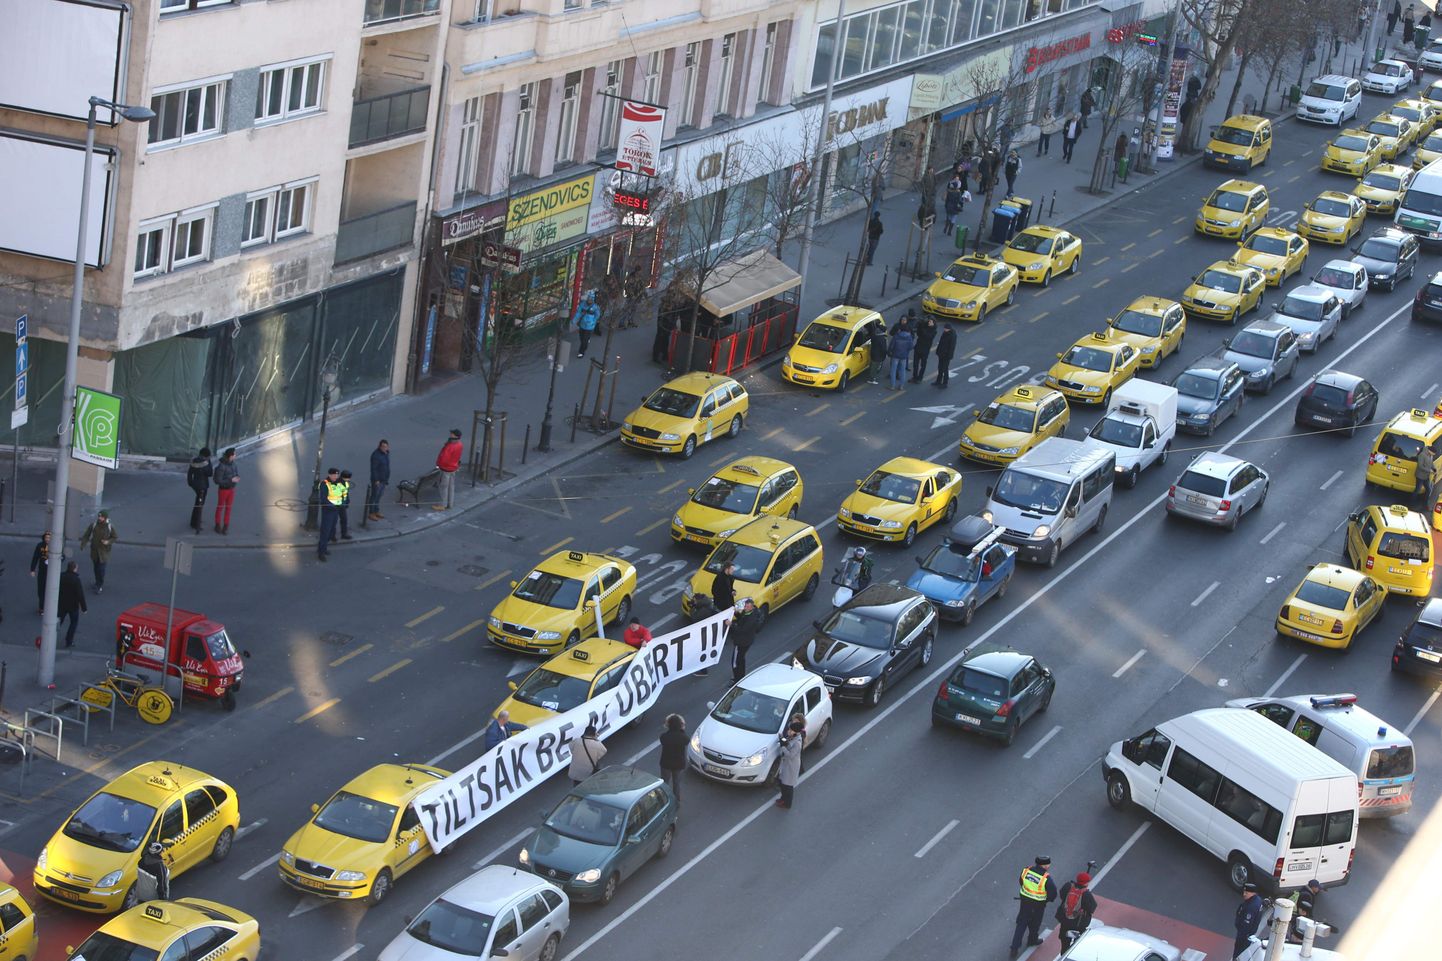 Budapestis nõudsid taksojuhid Uberi keelustamist. Pika protesti järel otsustas Ungari valitsus Uberi tegutsemist mitte keelata, kuid Uberi juhid peavad täitma täpselt samu nõudeid mis tavataksojuhid.